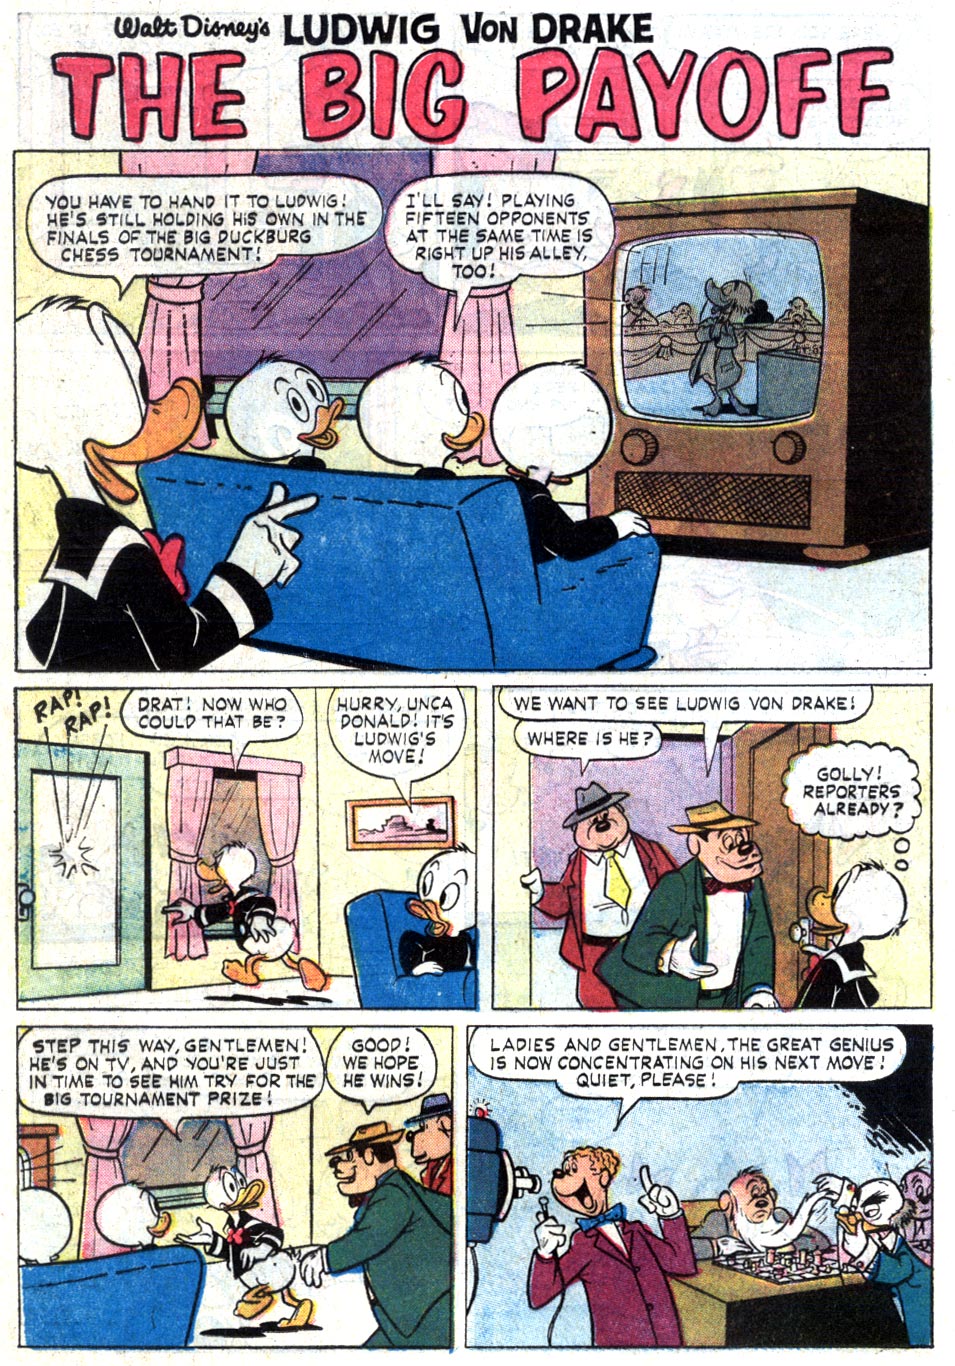 Read online Walt Disney's Ludwig Von Drake comic -  Issue #4 - 24